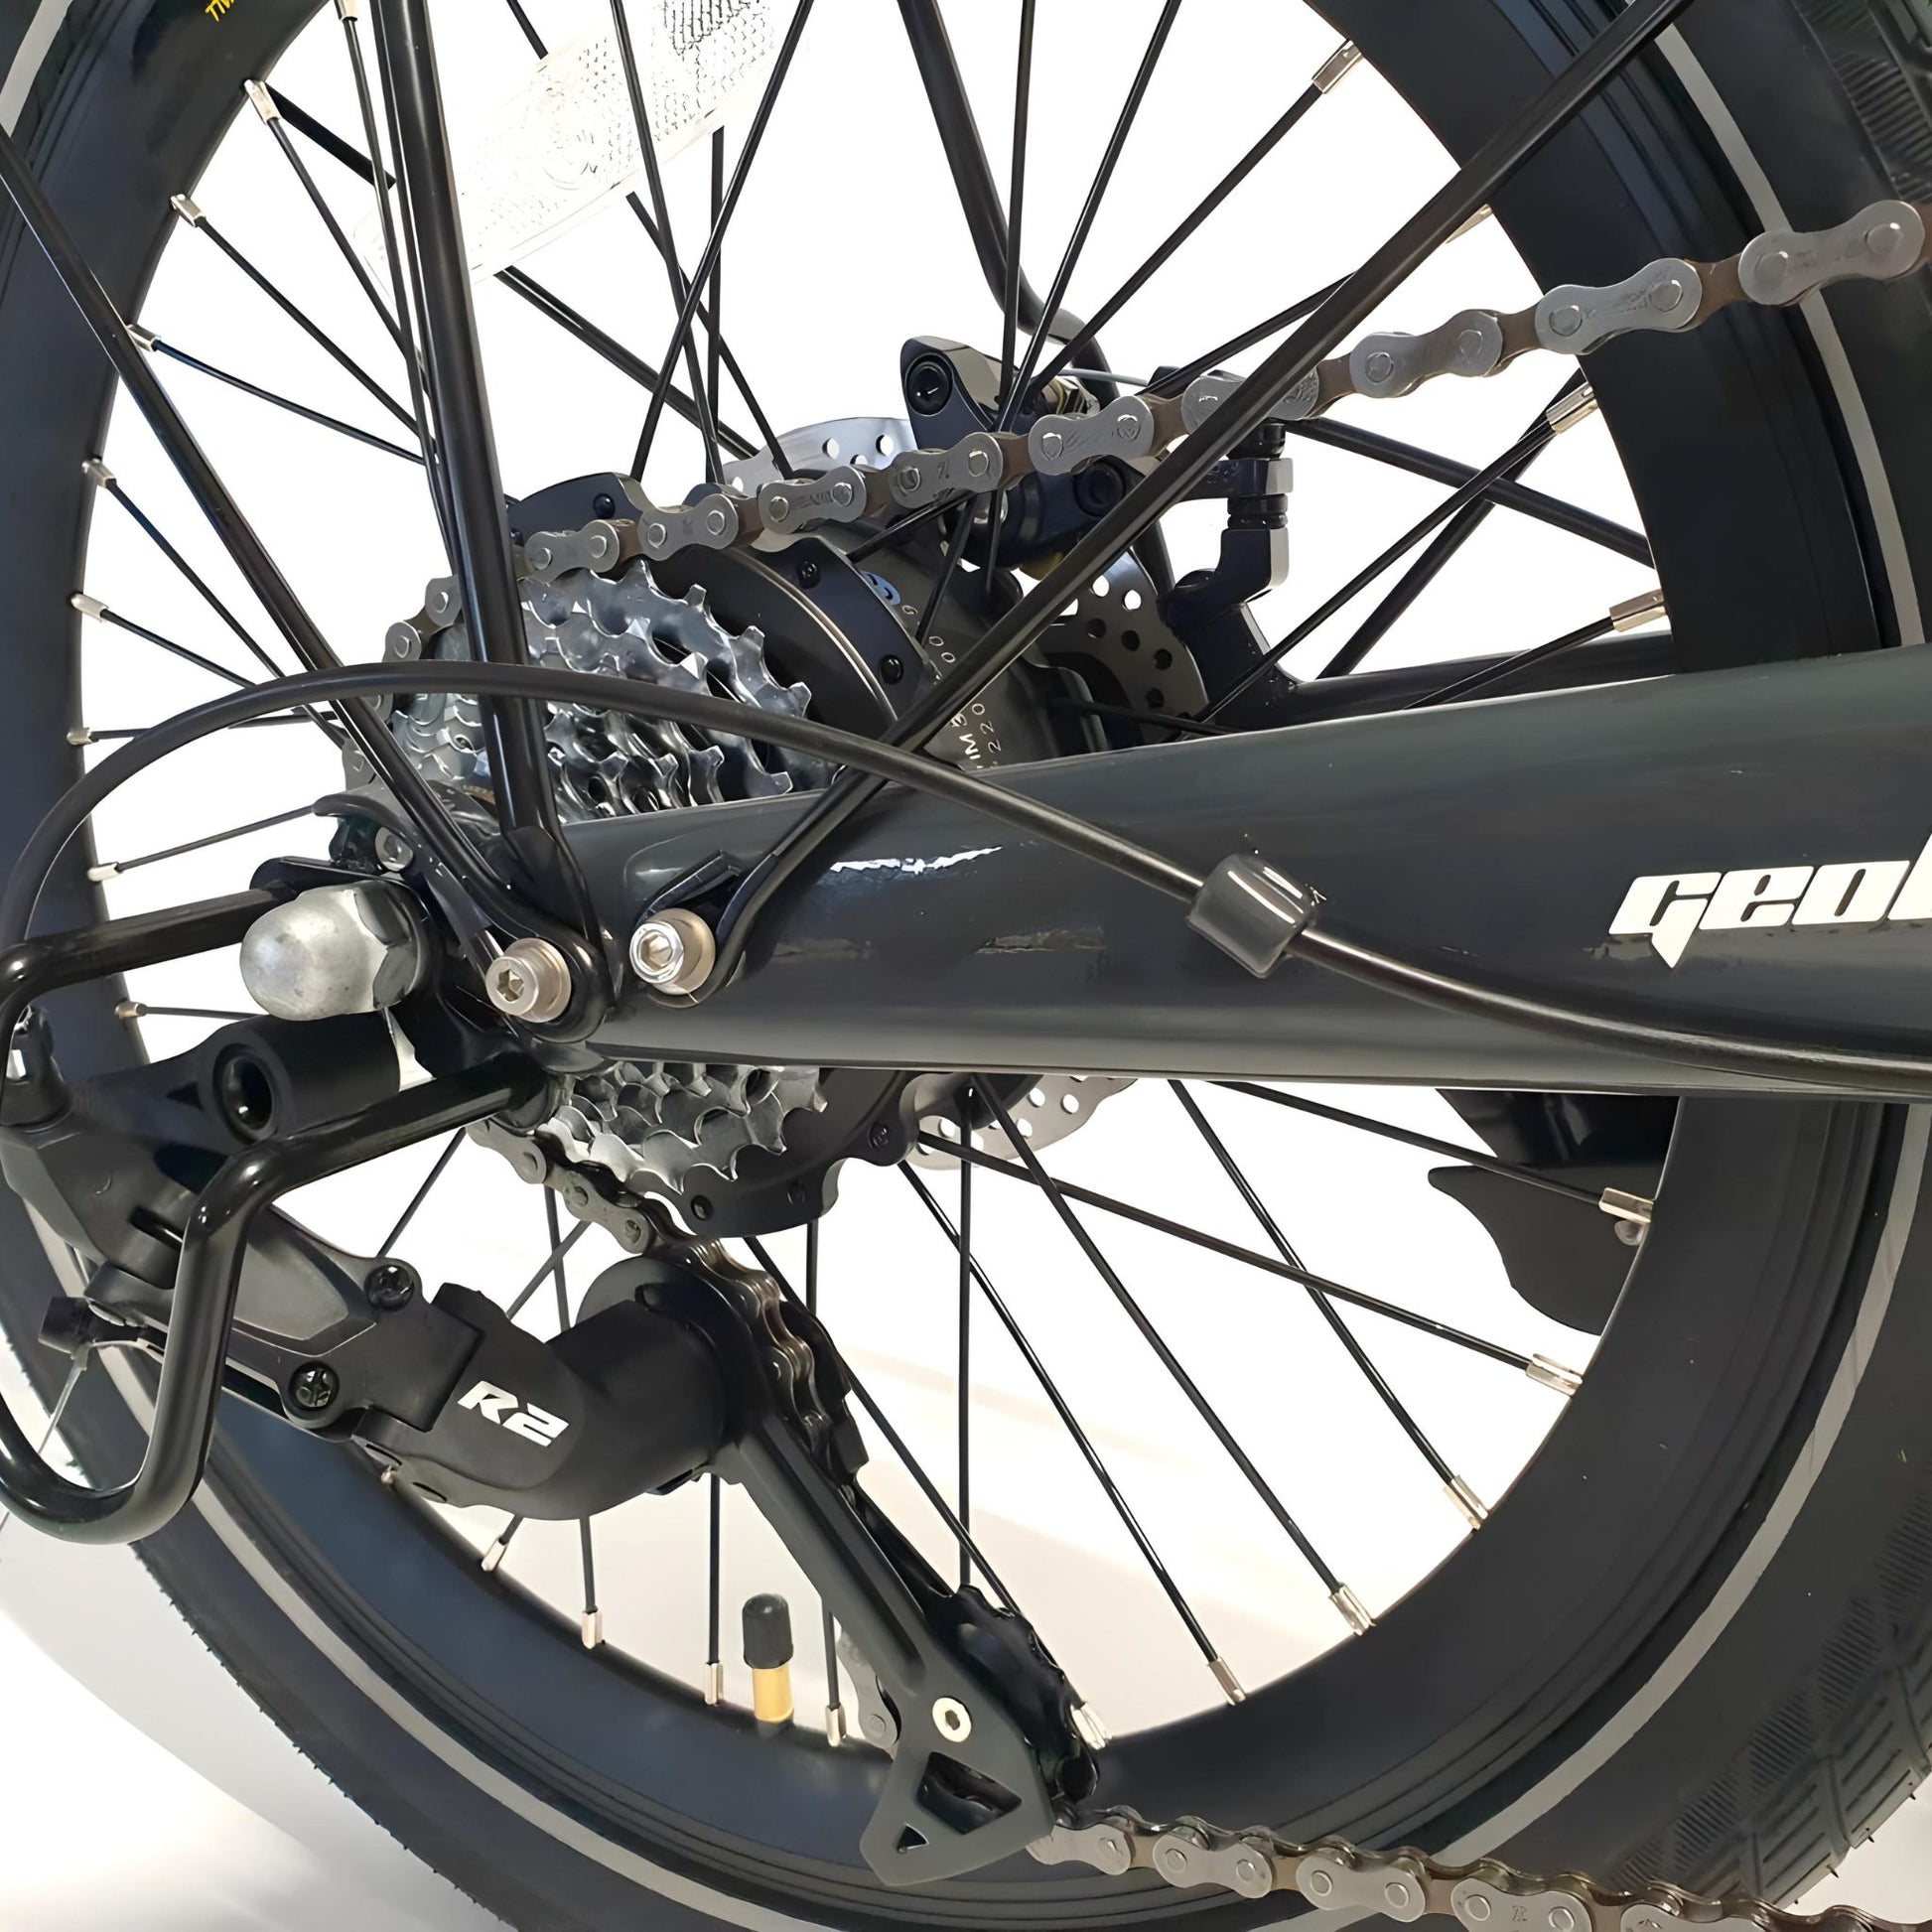 Detailed gear and wheel of Geobike Melon Folding E-Bike.